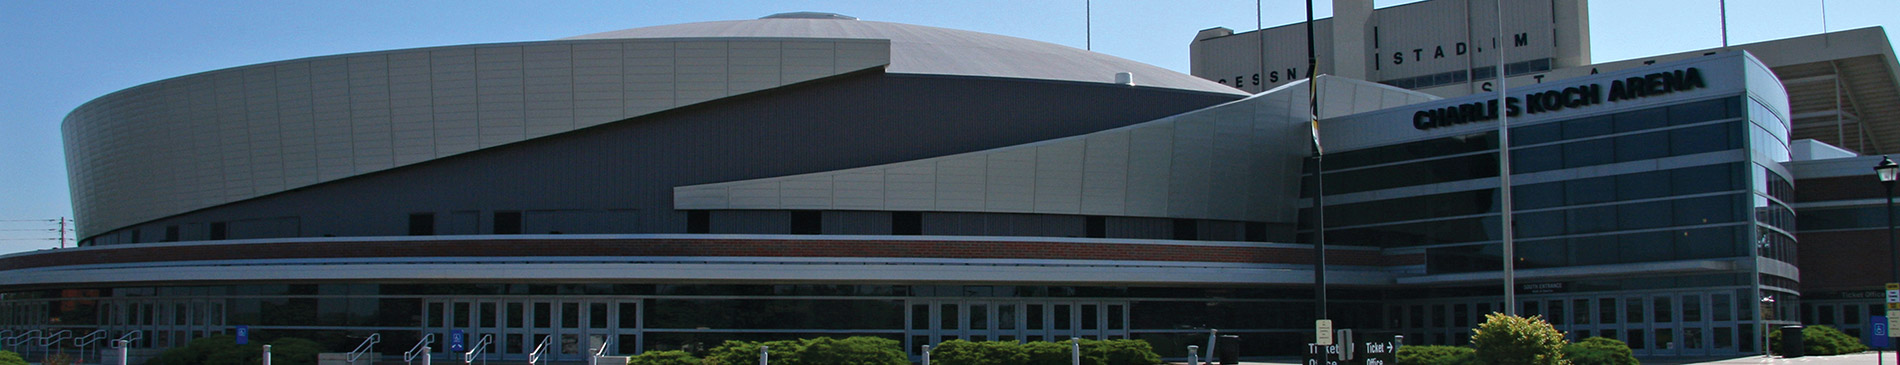 Koch Arena